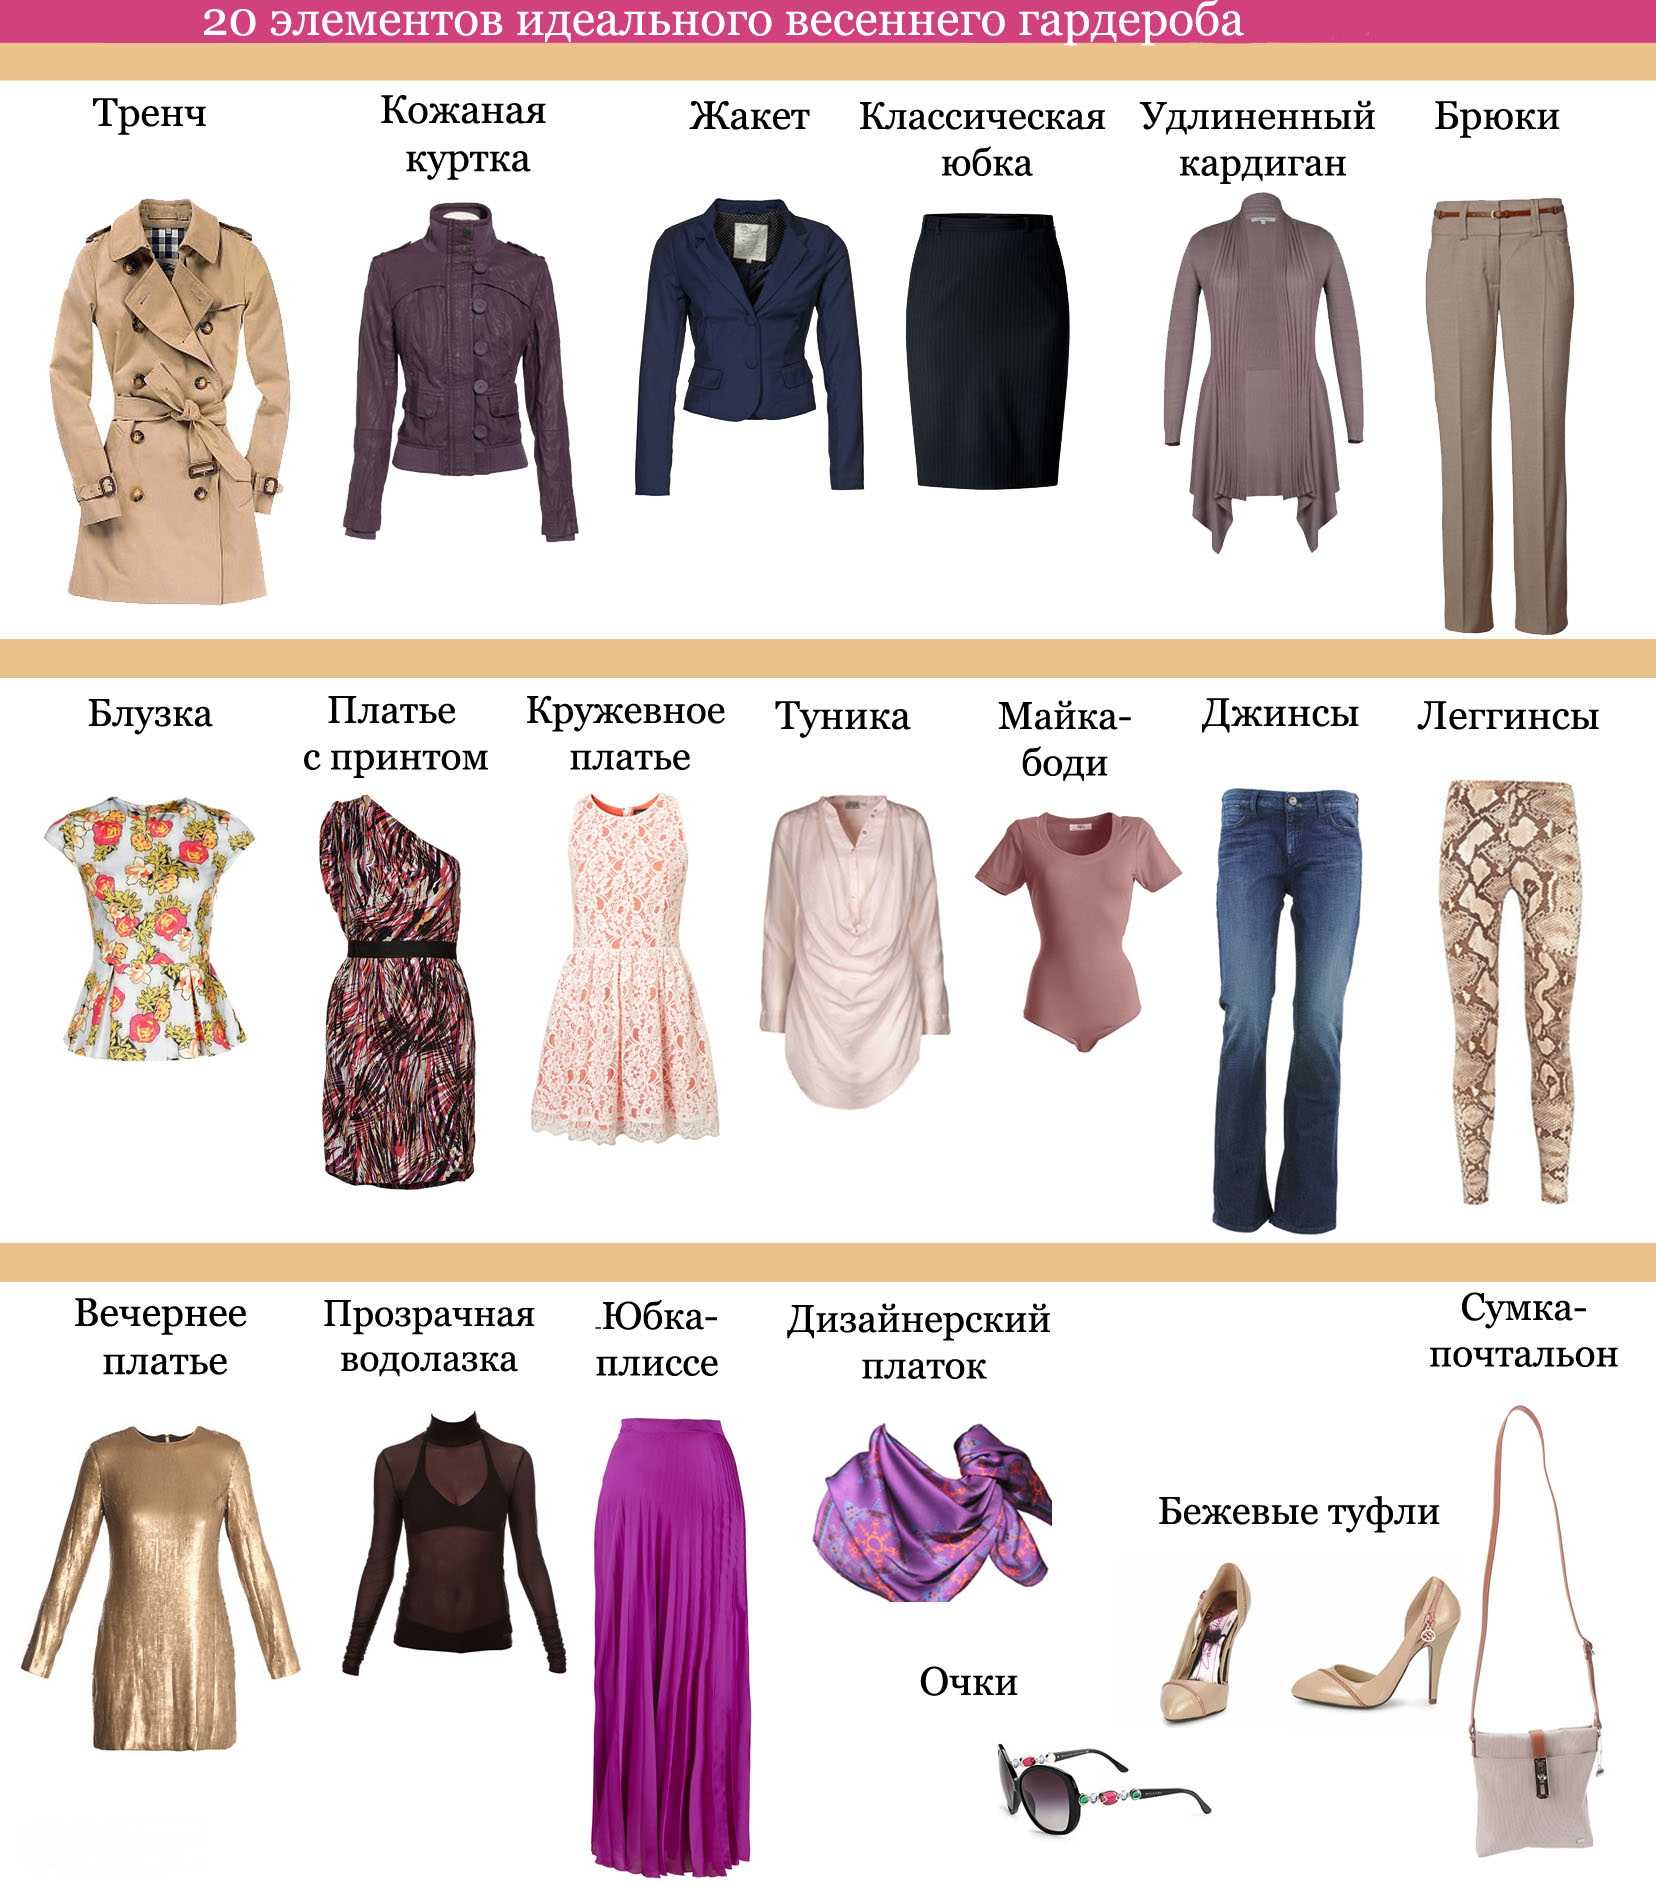 Базовый гардероб для женщин и девушек: советы от эвелины хромченко